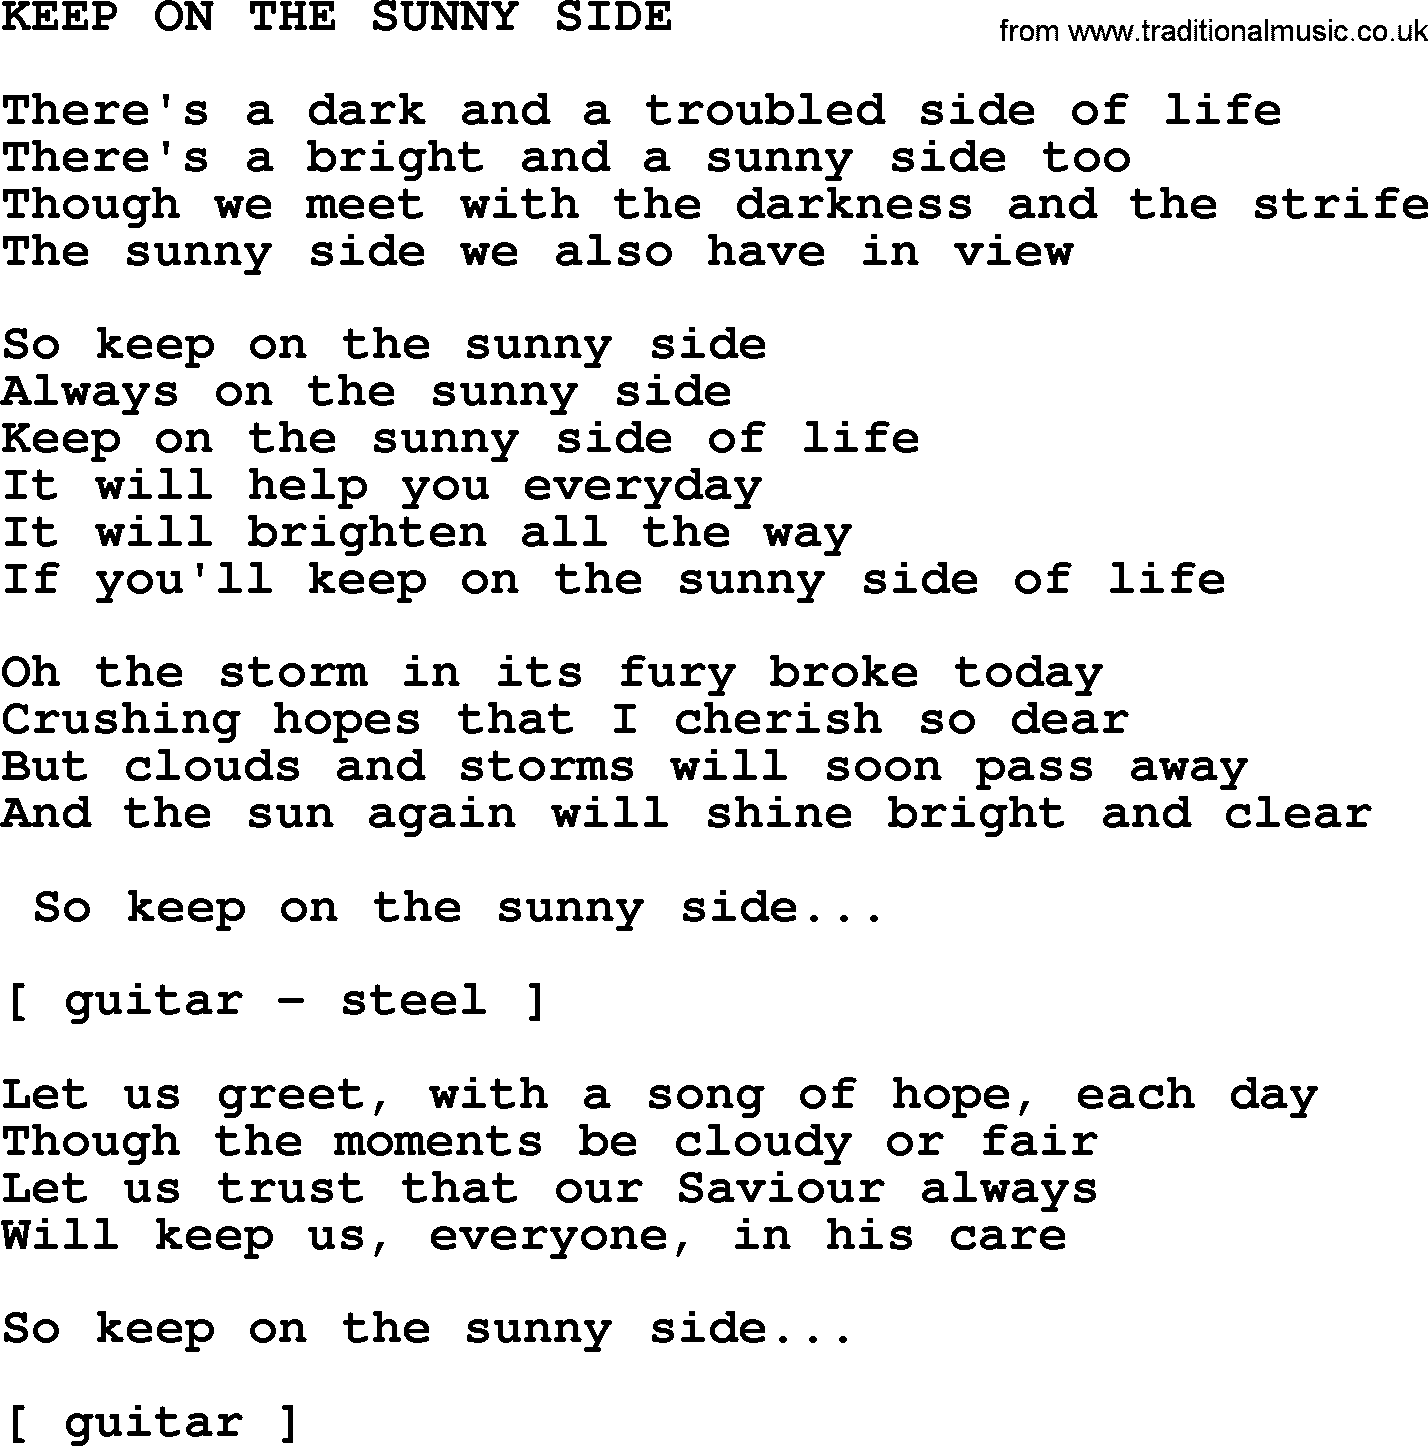 Merle Haggard song: Keep On The Sunny Side, lyrics.